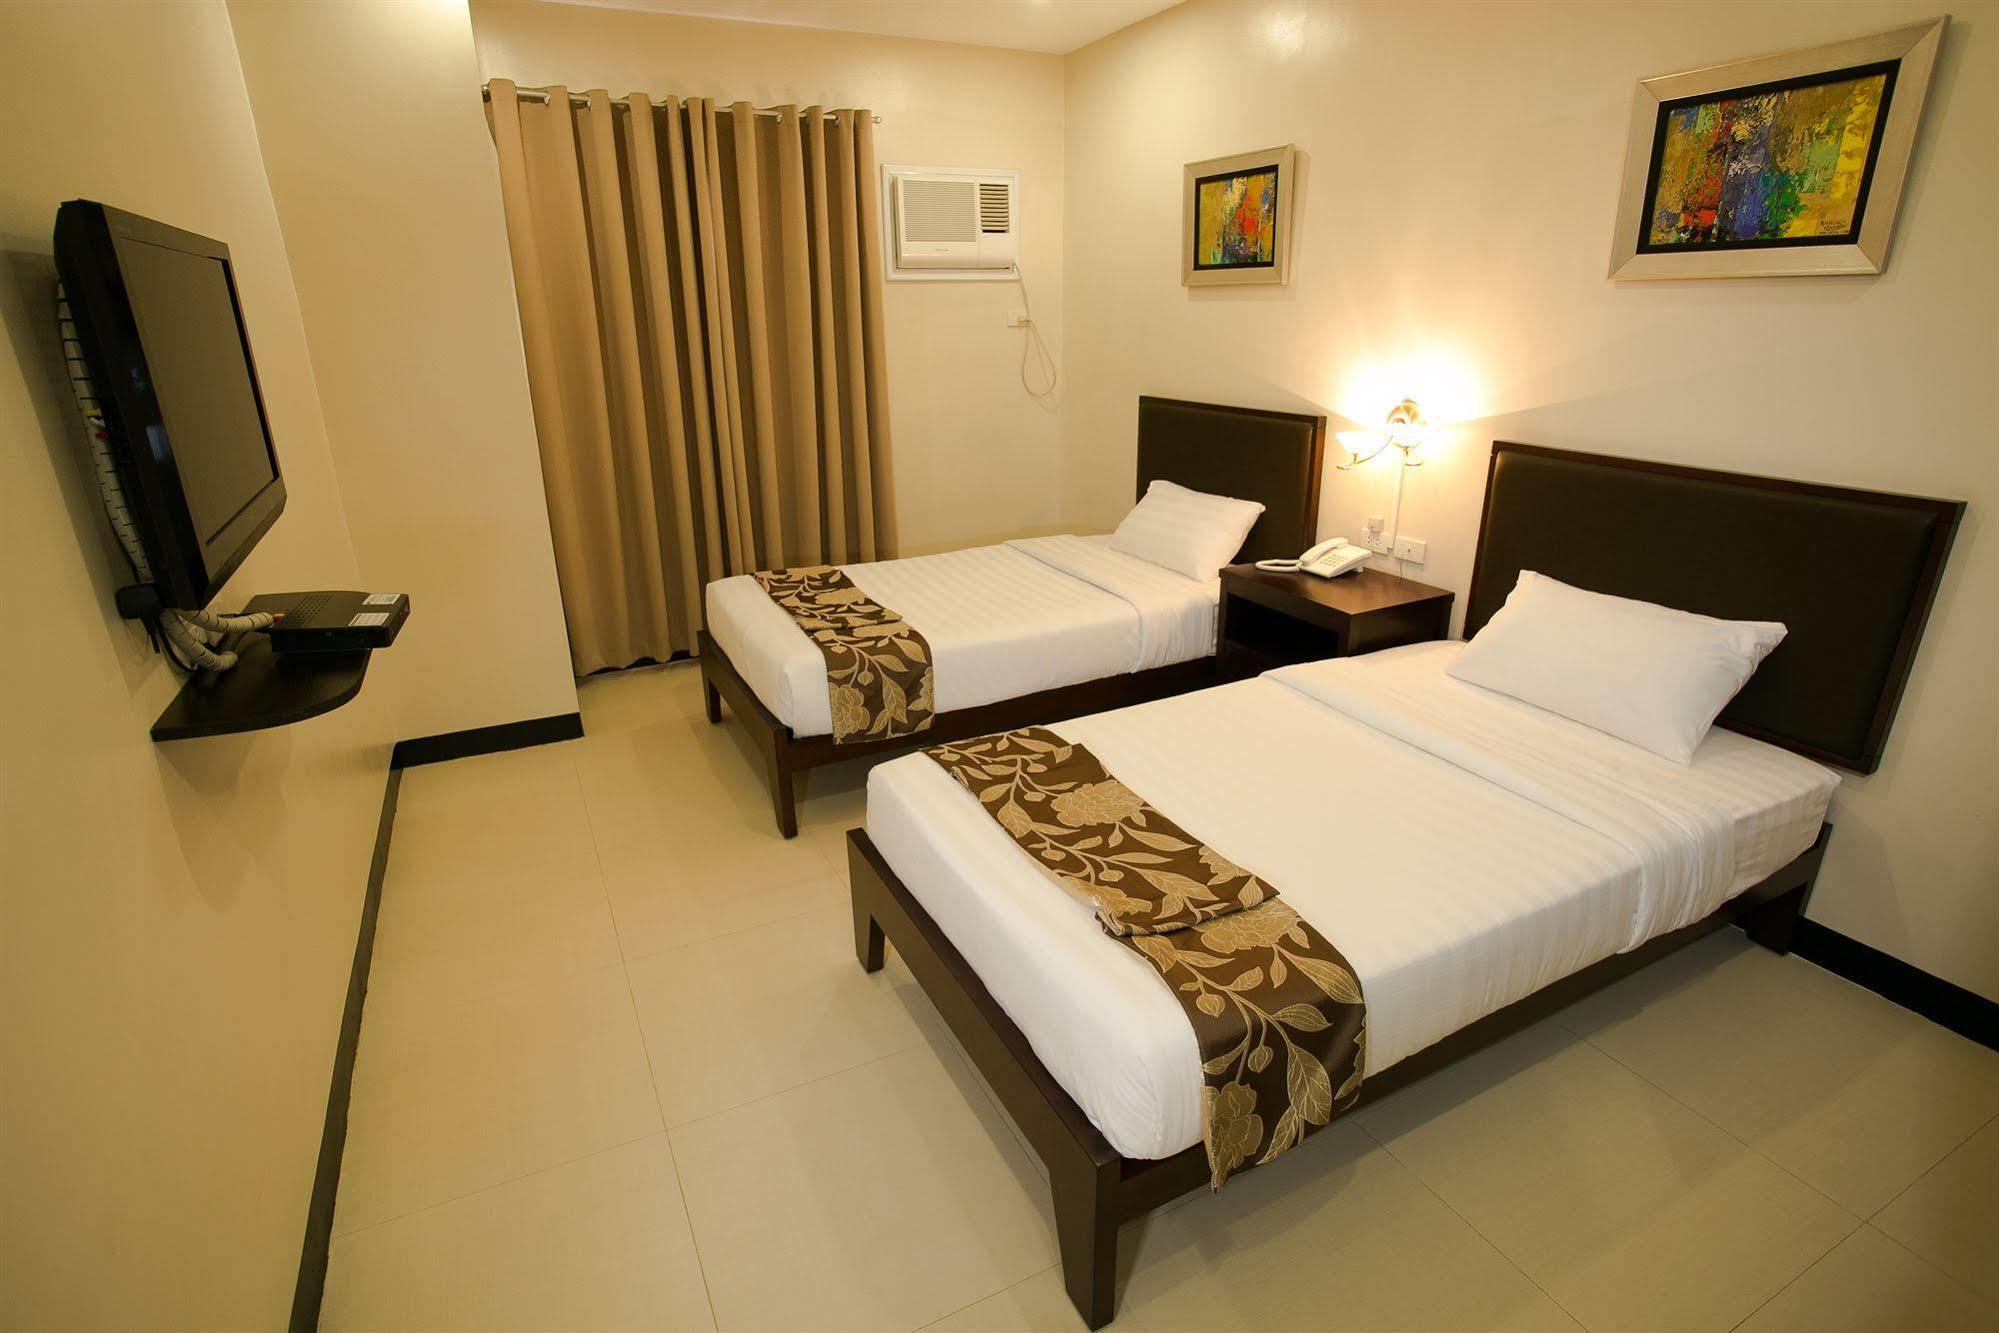 Main Hotel & Suites Cebu Stadt Exterior foto